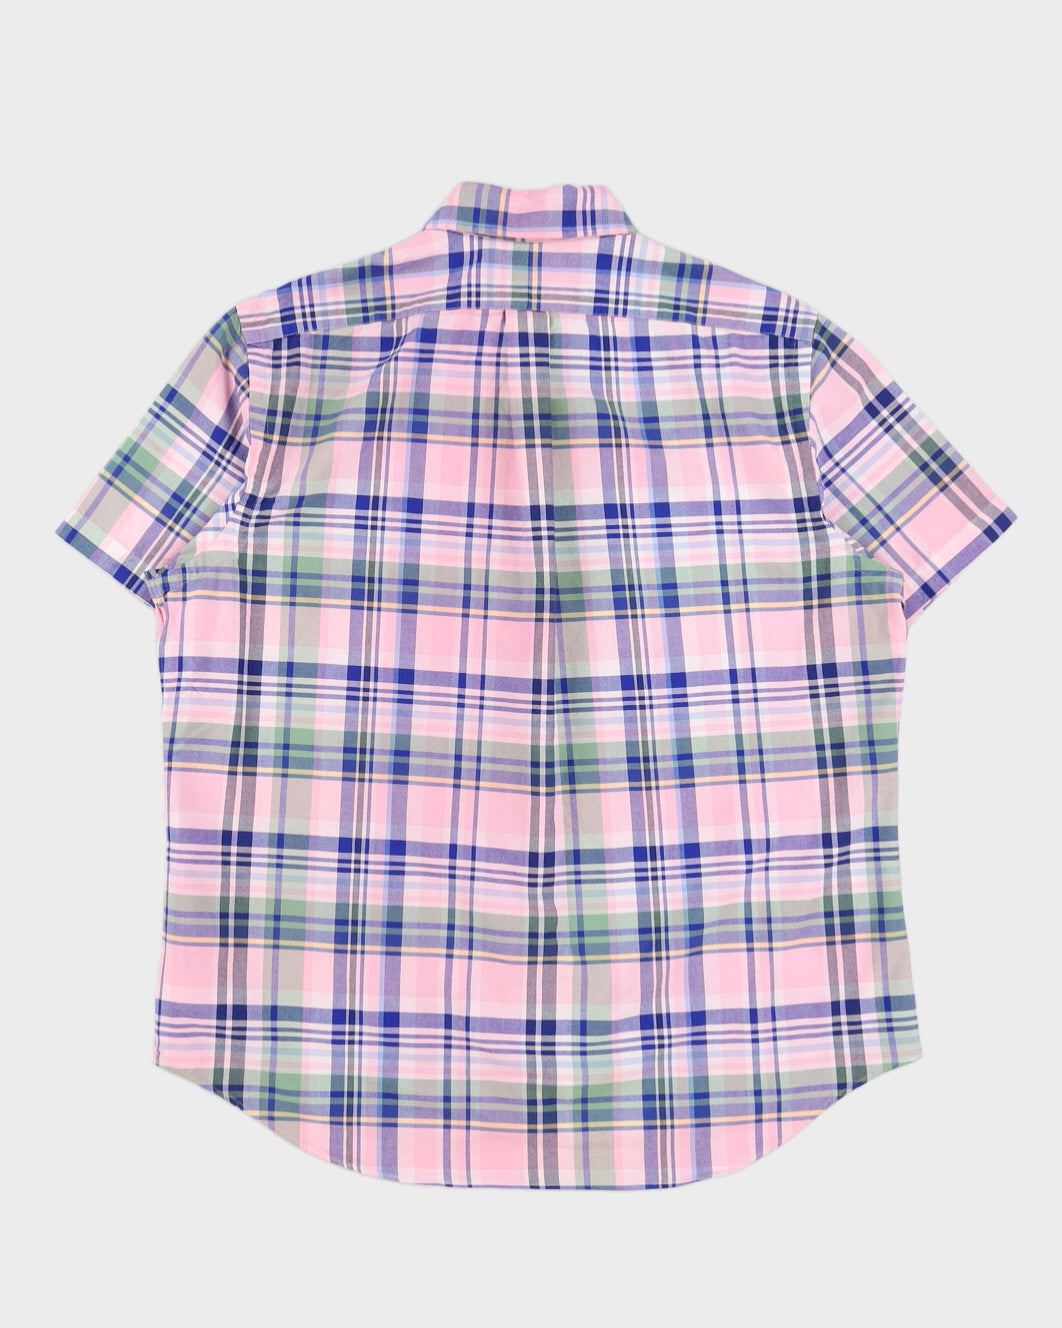 Ralph Lauren Pink & Blue Check Short Sleeve Shirt - L